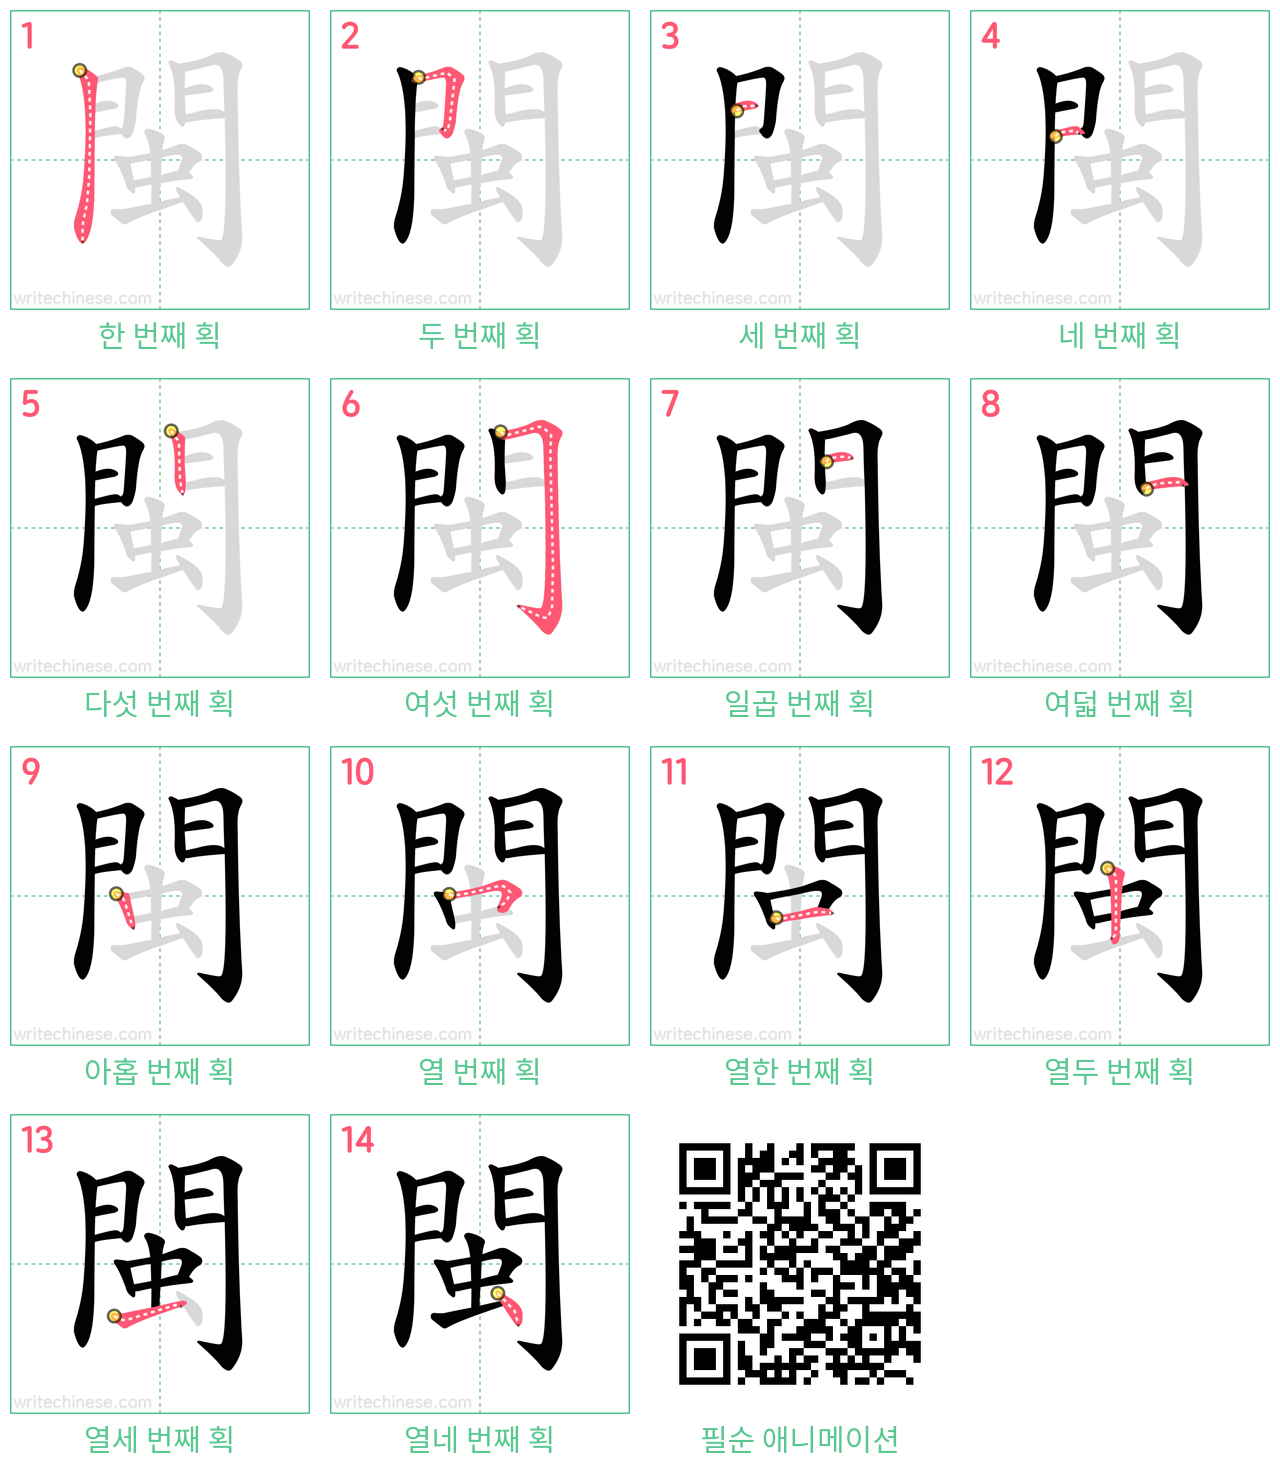 閩 step-by-step stroke order diagrams